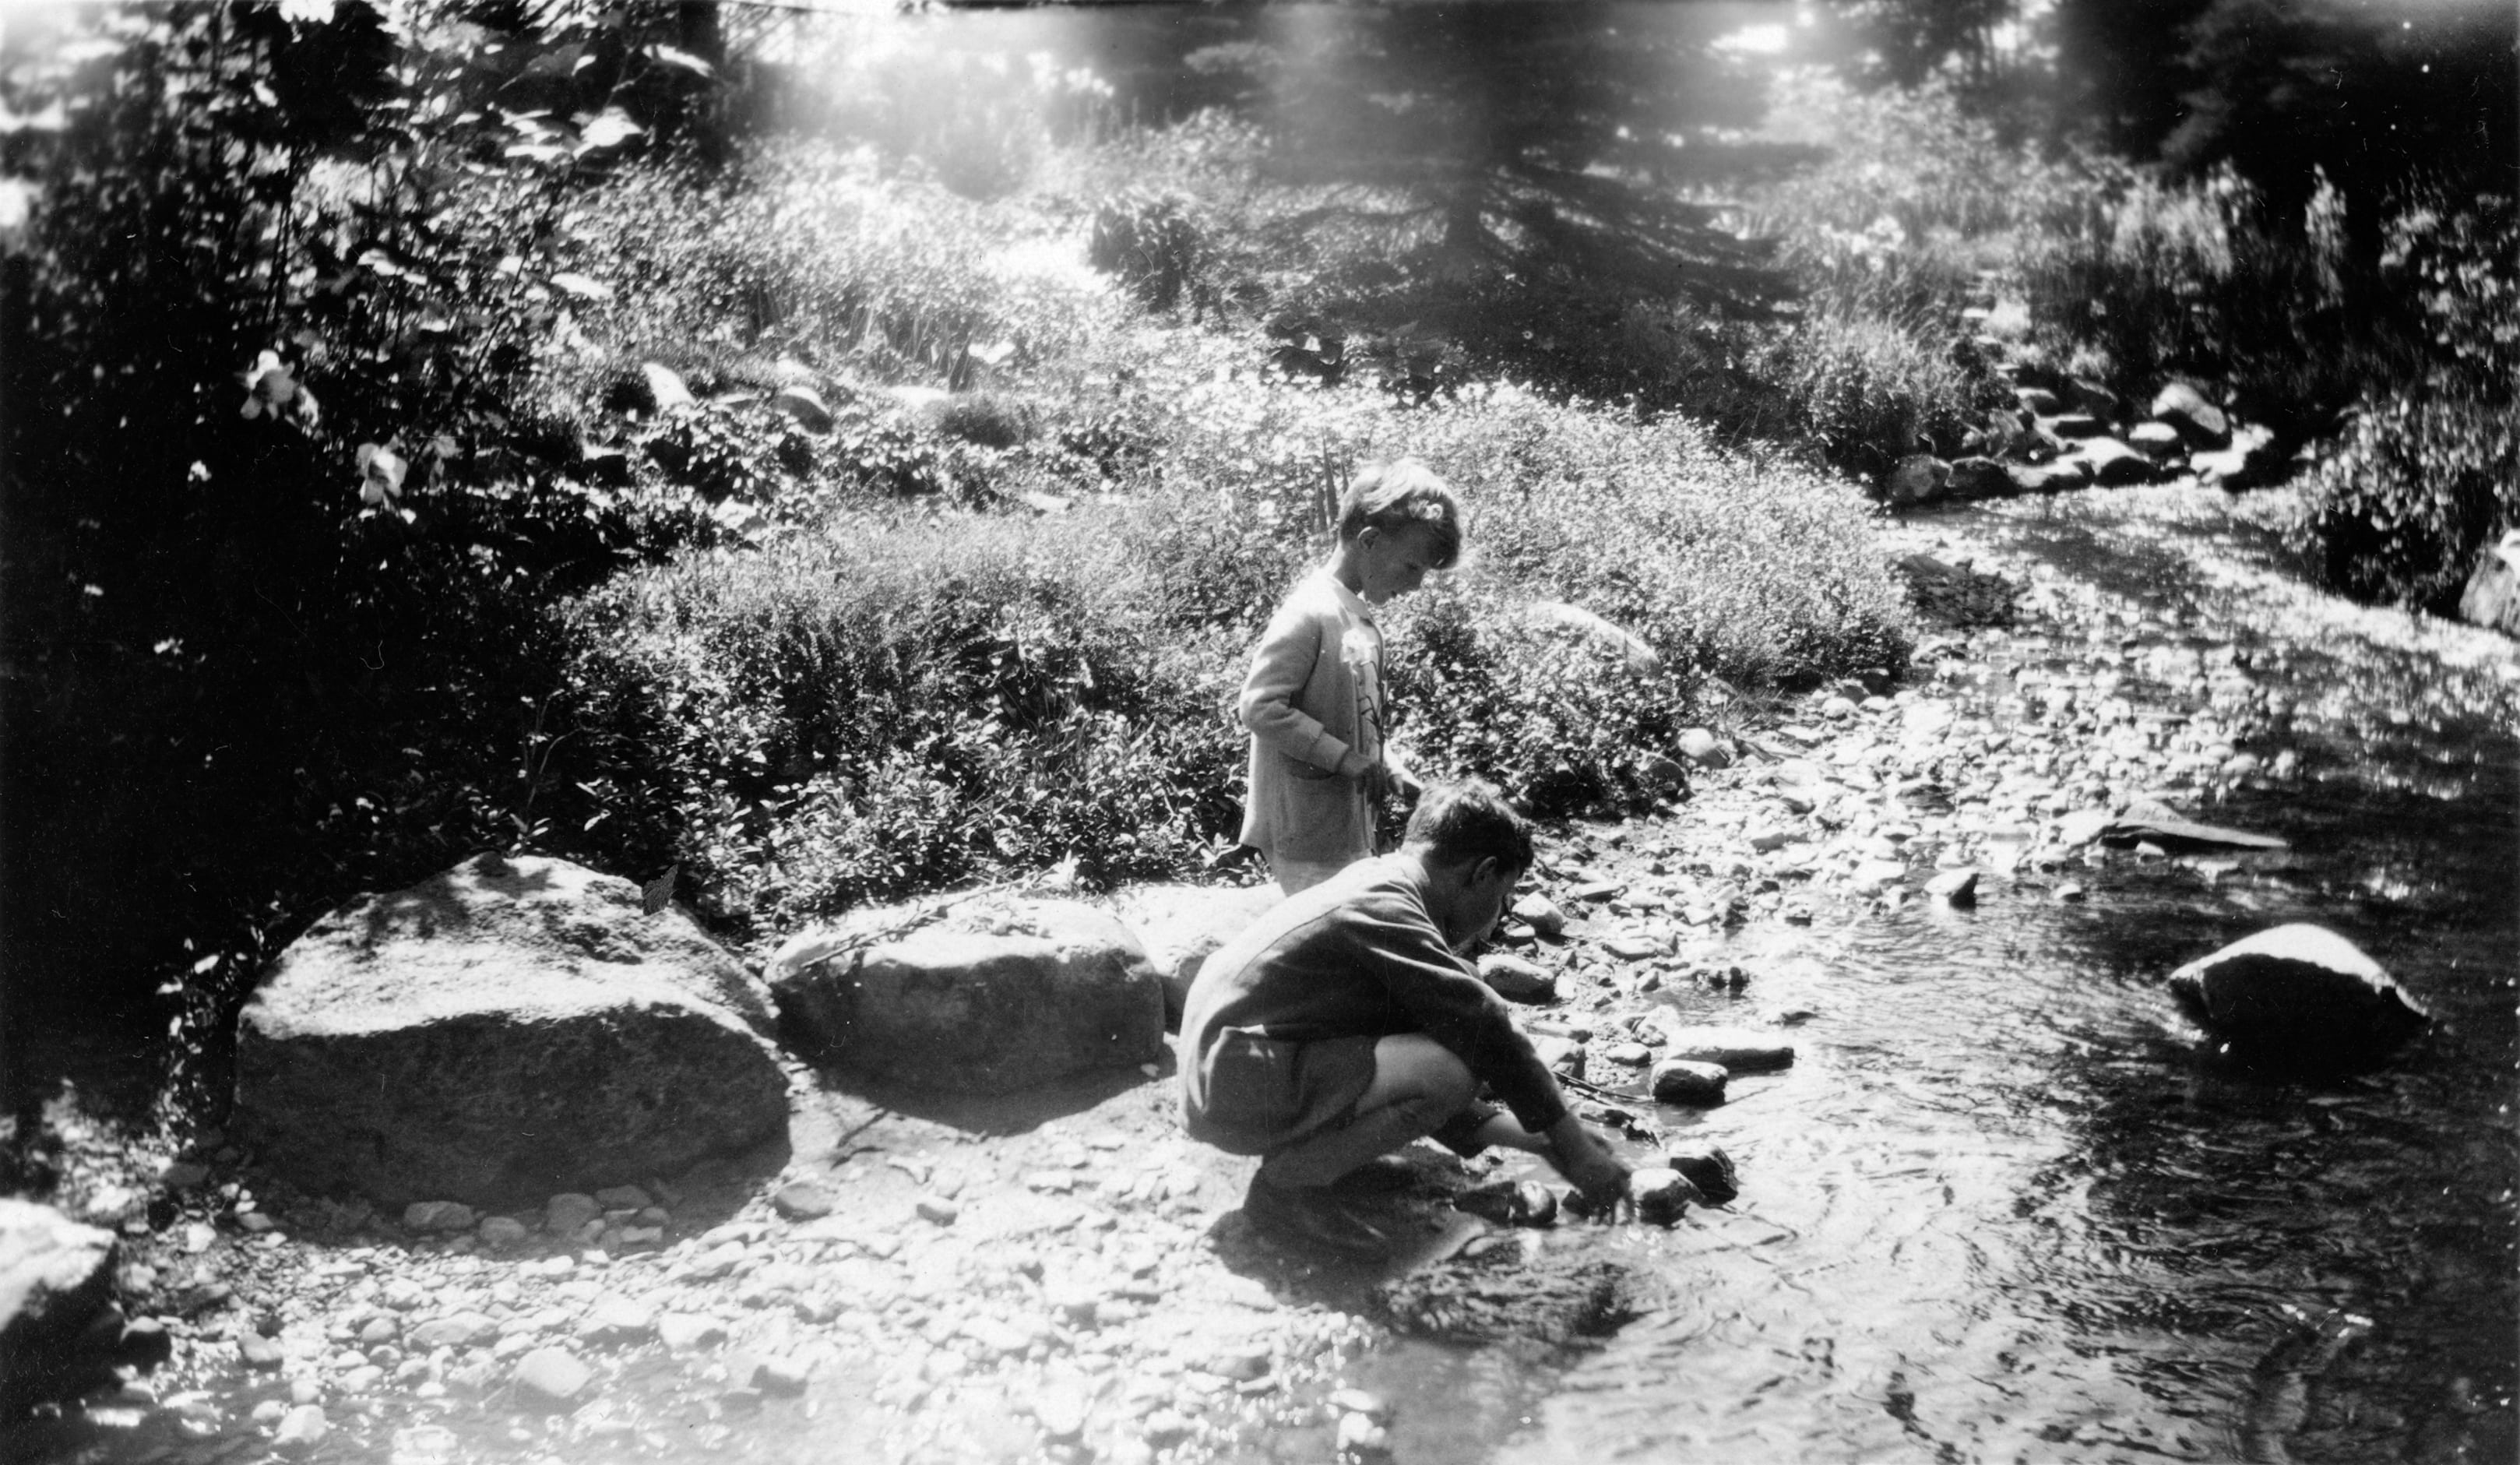 Deux enfants jouent dans un ruisseau, qui serpente dans une forêt luxuriante.